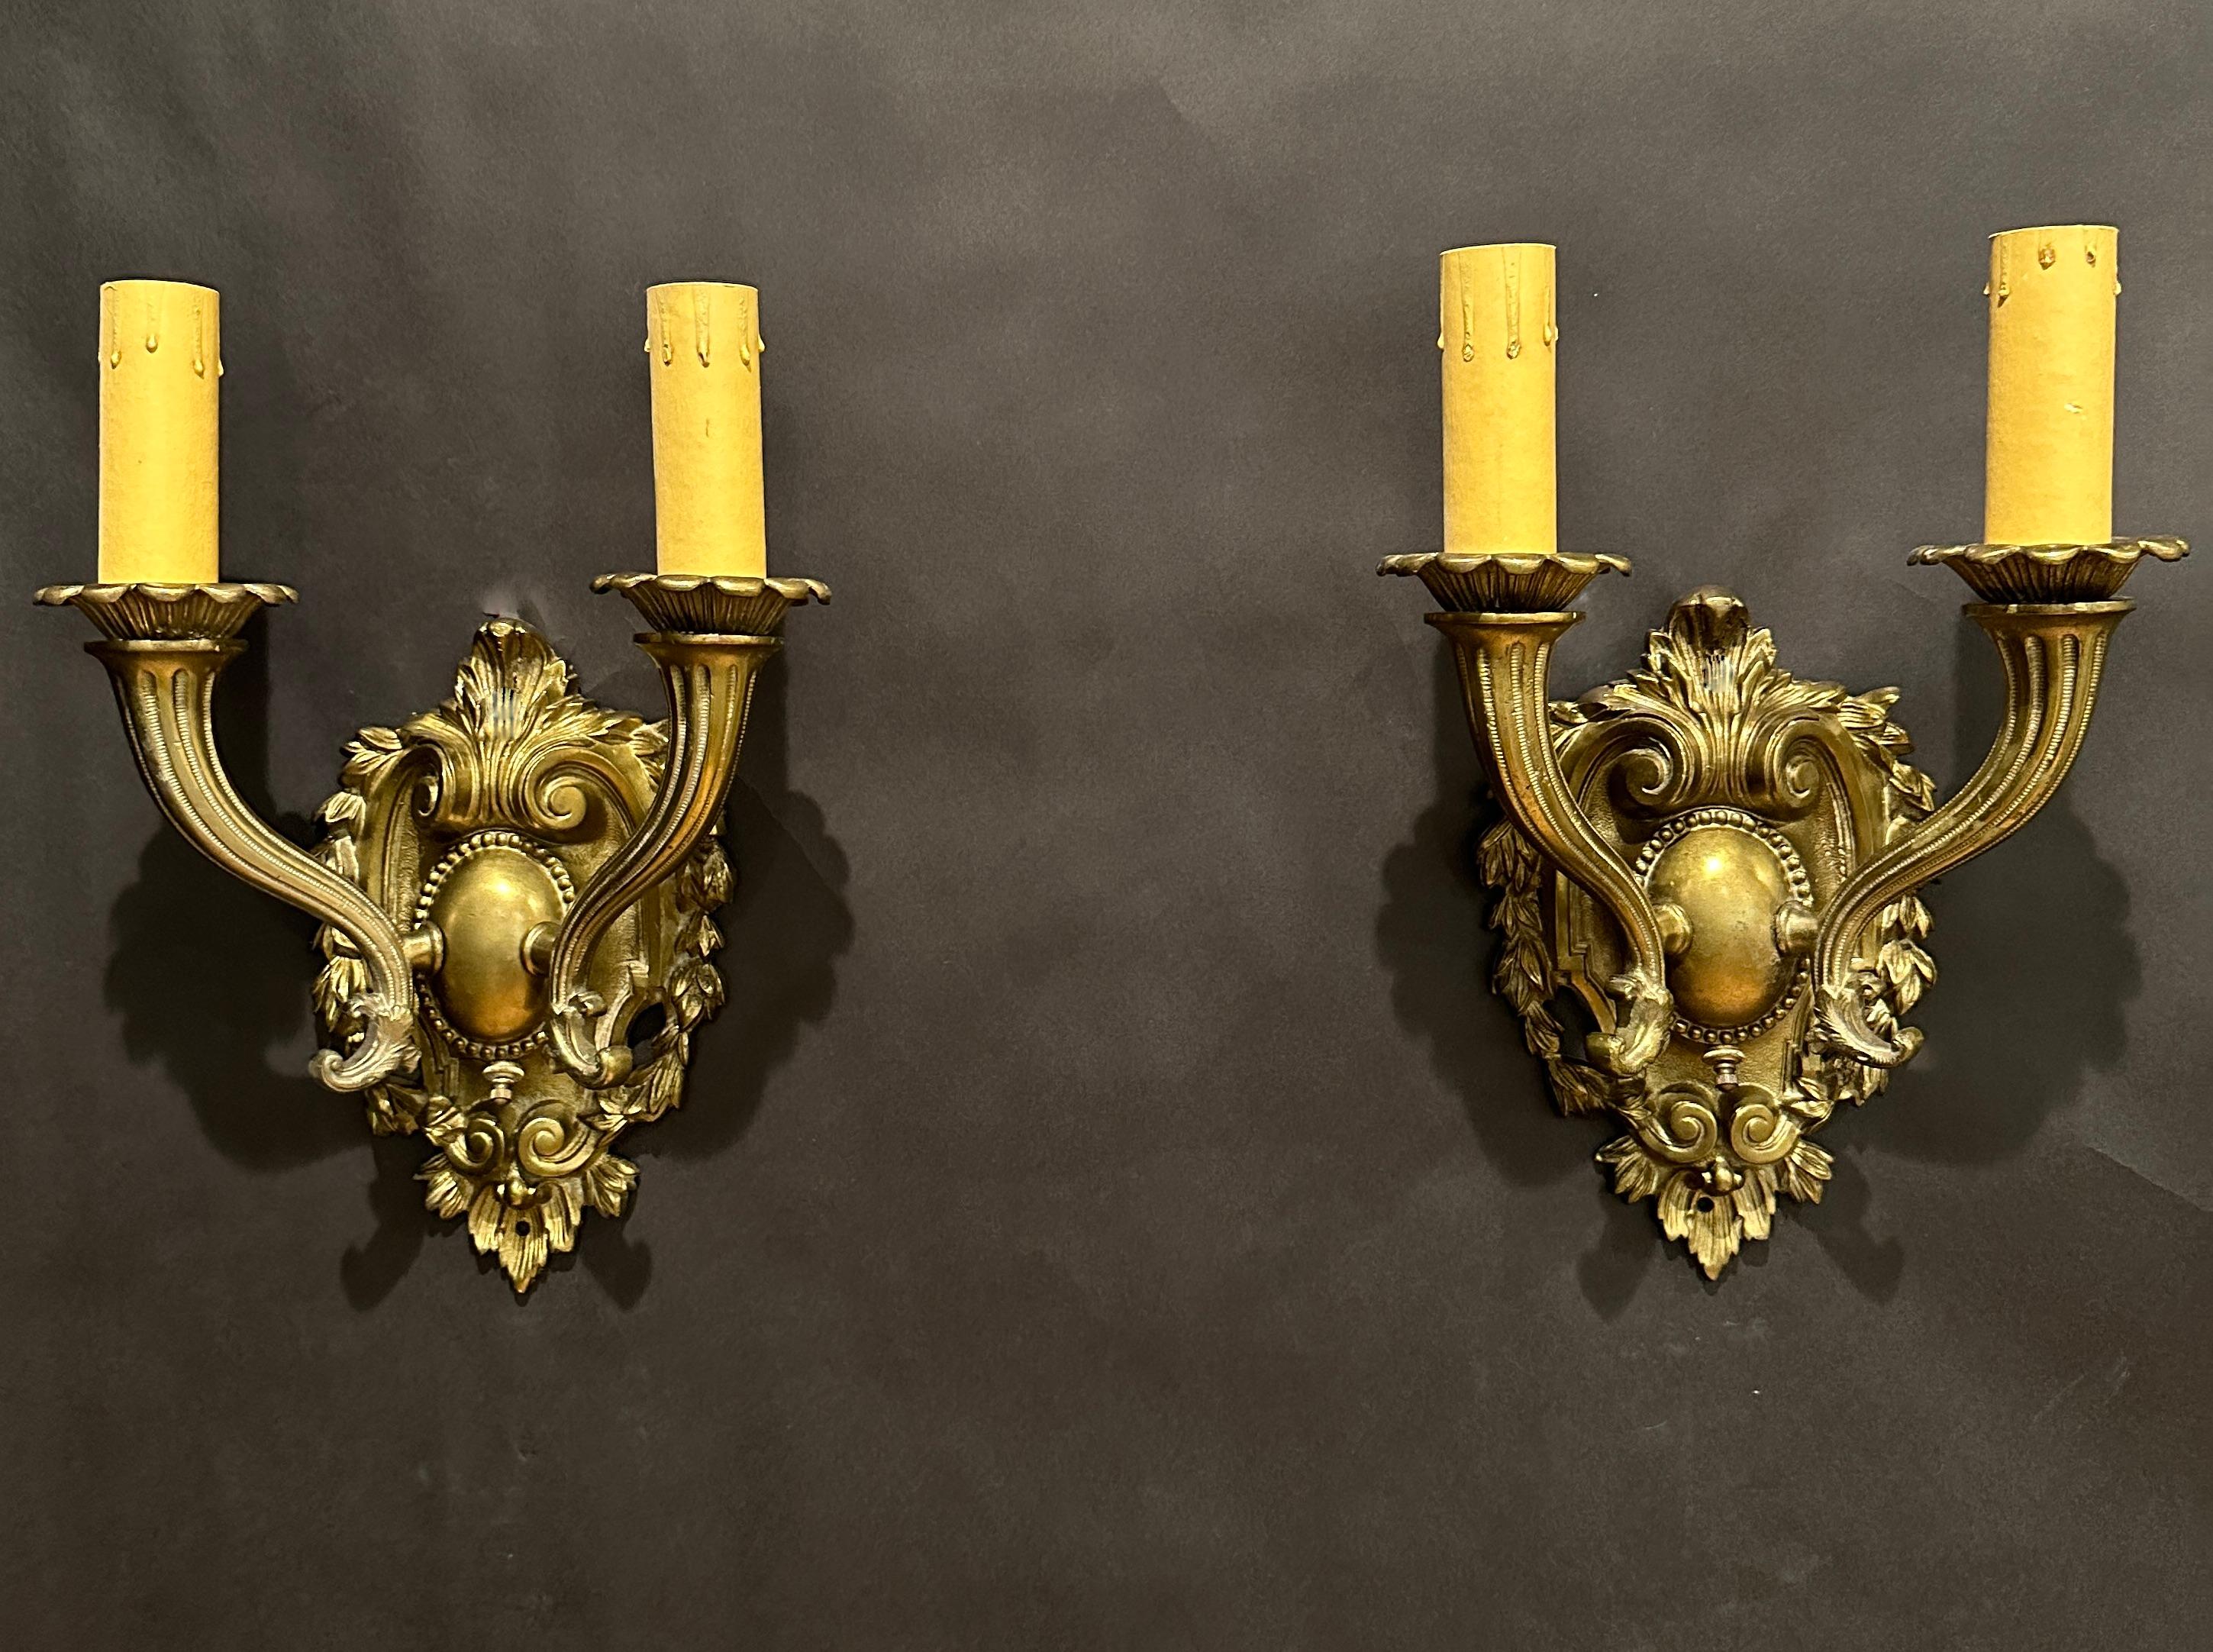 Nizza Paar Schild zurück Bronze zwei Arm Wandleuchter in  die  Renaissance-Revival-Stil mit spitz zulaufenden Füllhorn-Armen.